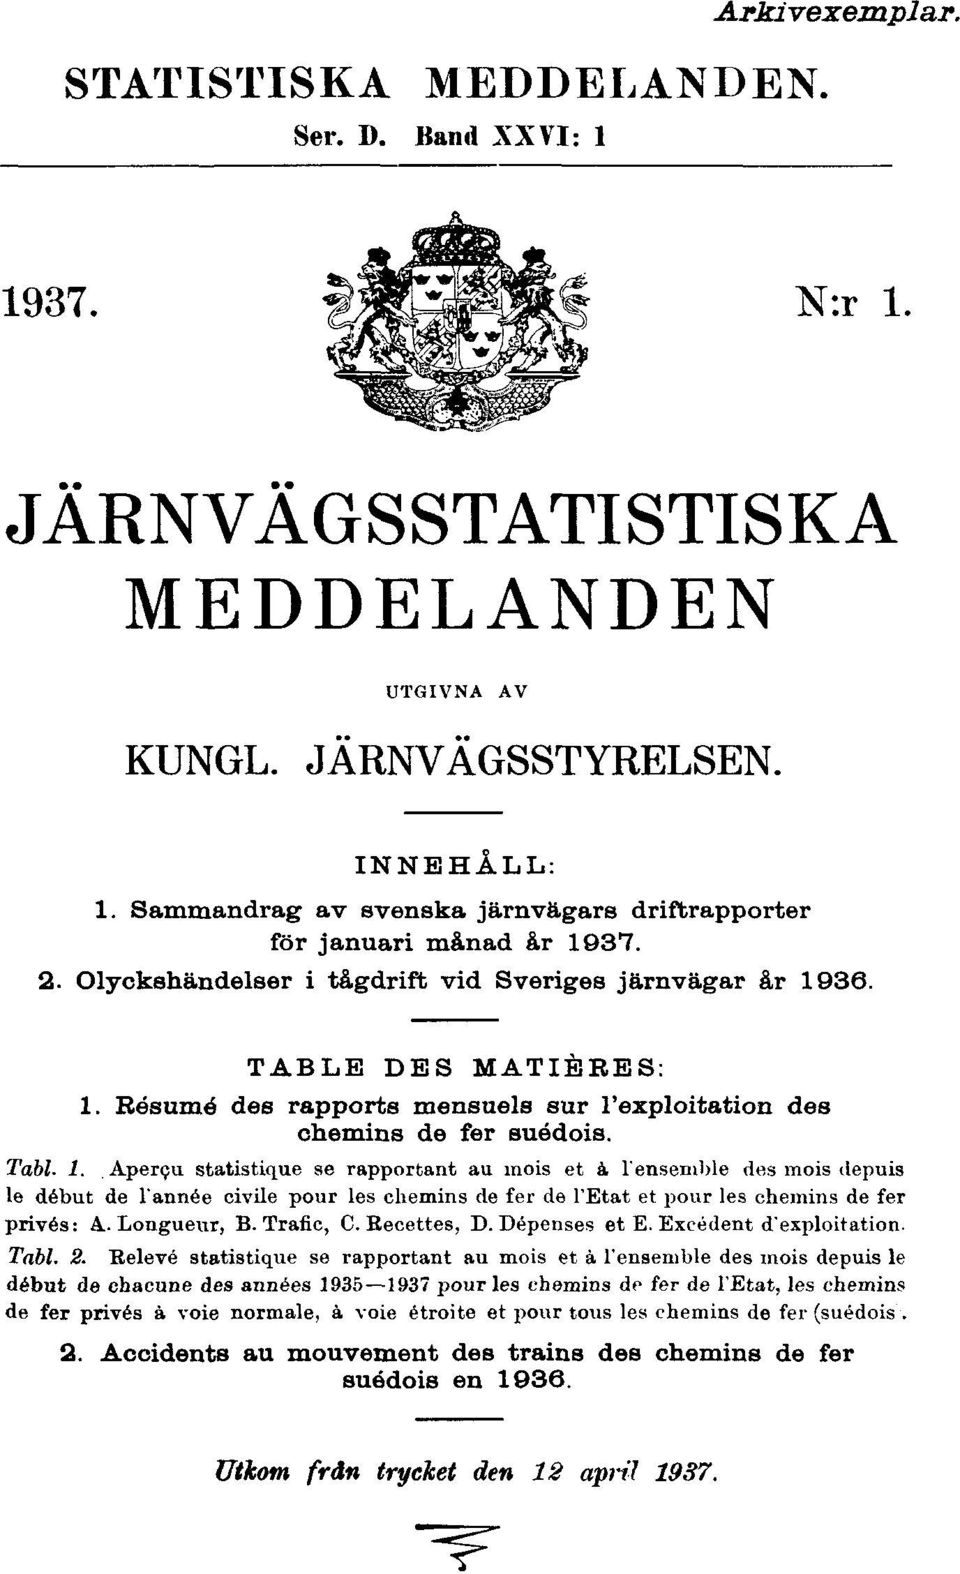 Résumé des rapports mensuels sur l'exploitation des chemins de fer suédois. Tabl. 1.